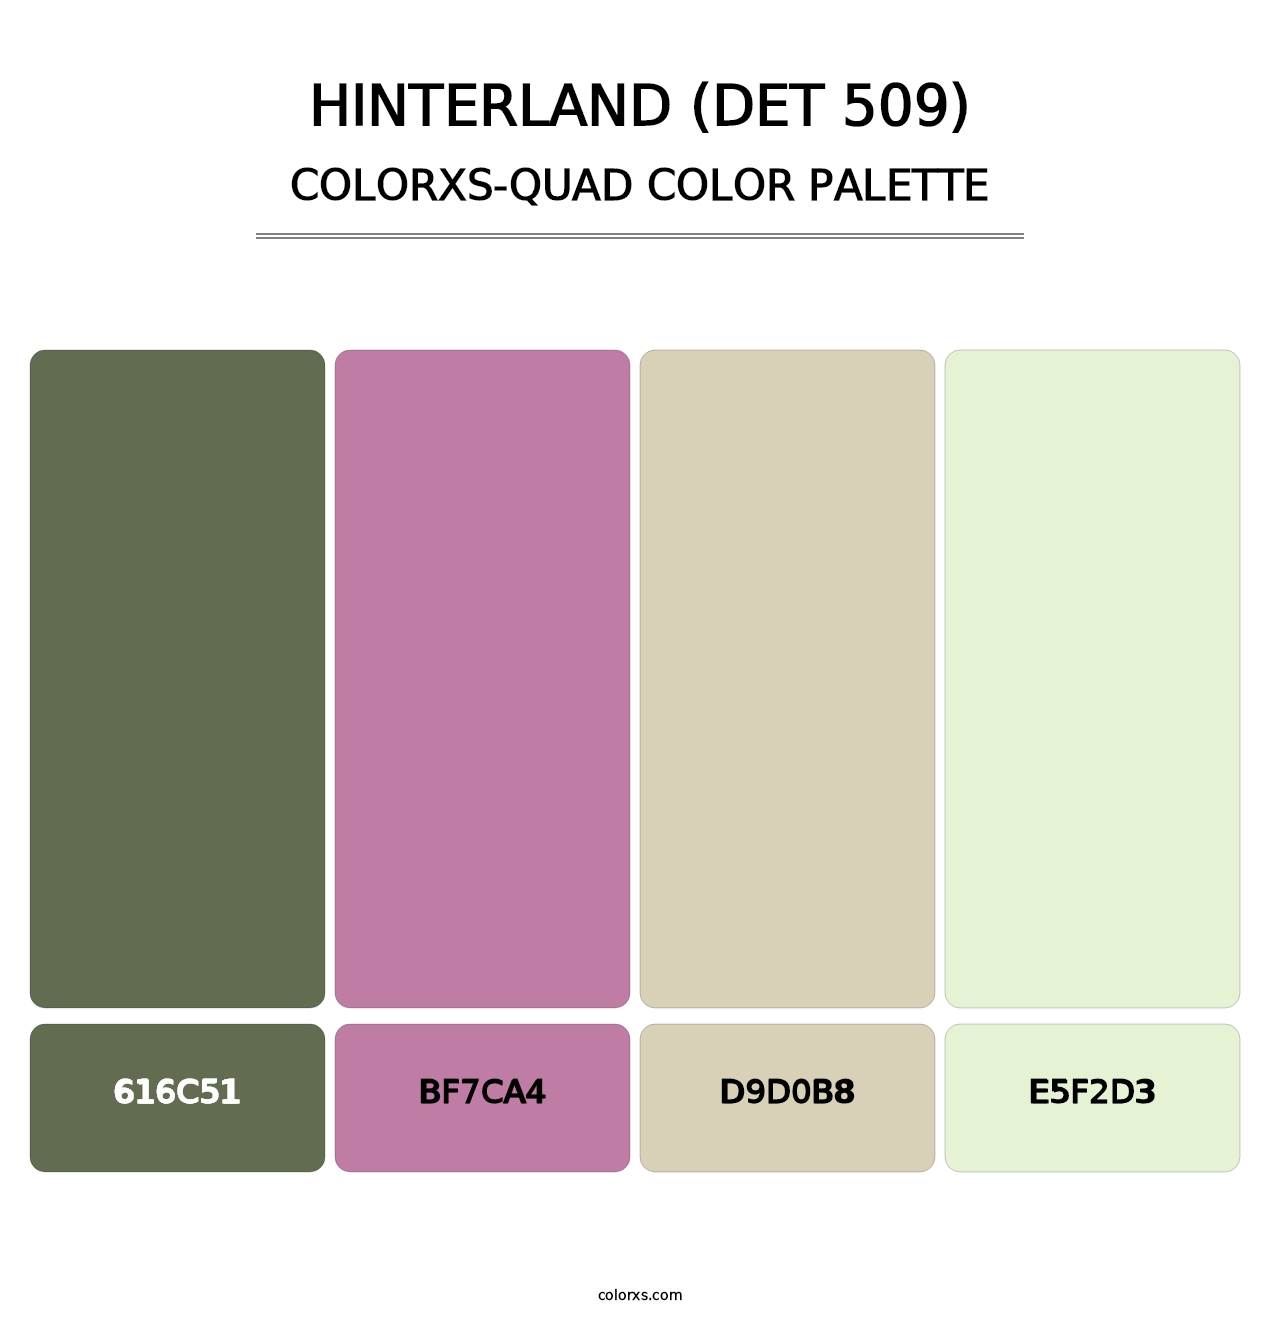 Hinterland (DET 509) - Colorxs Quad Palette